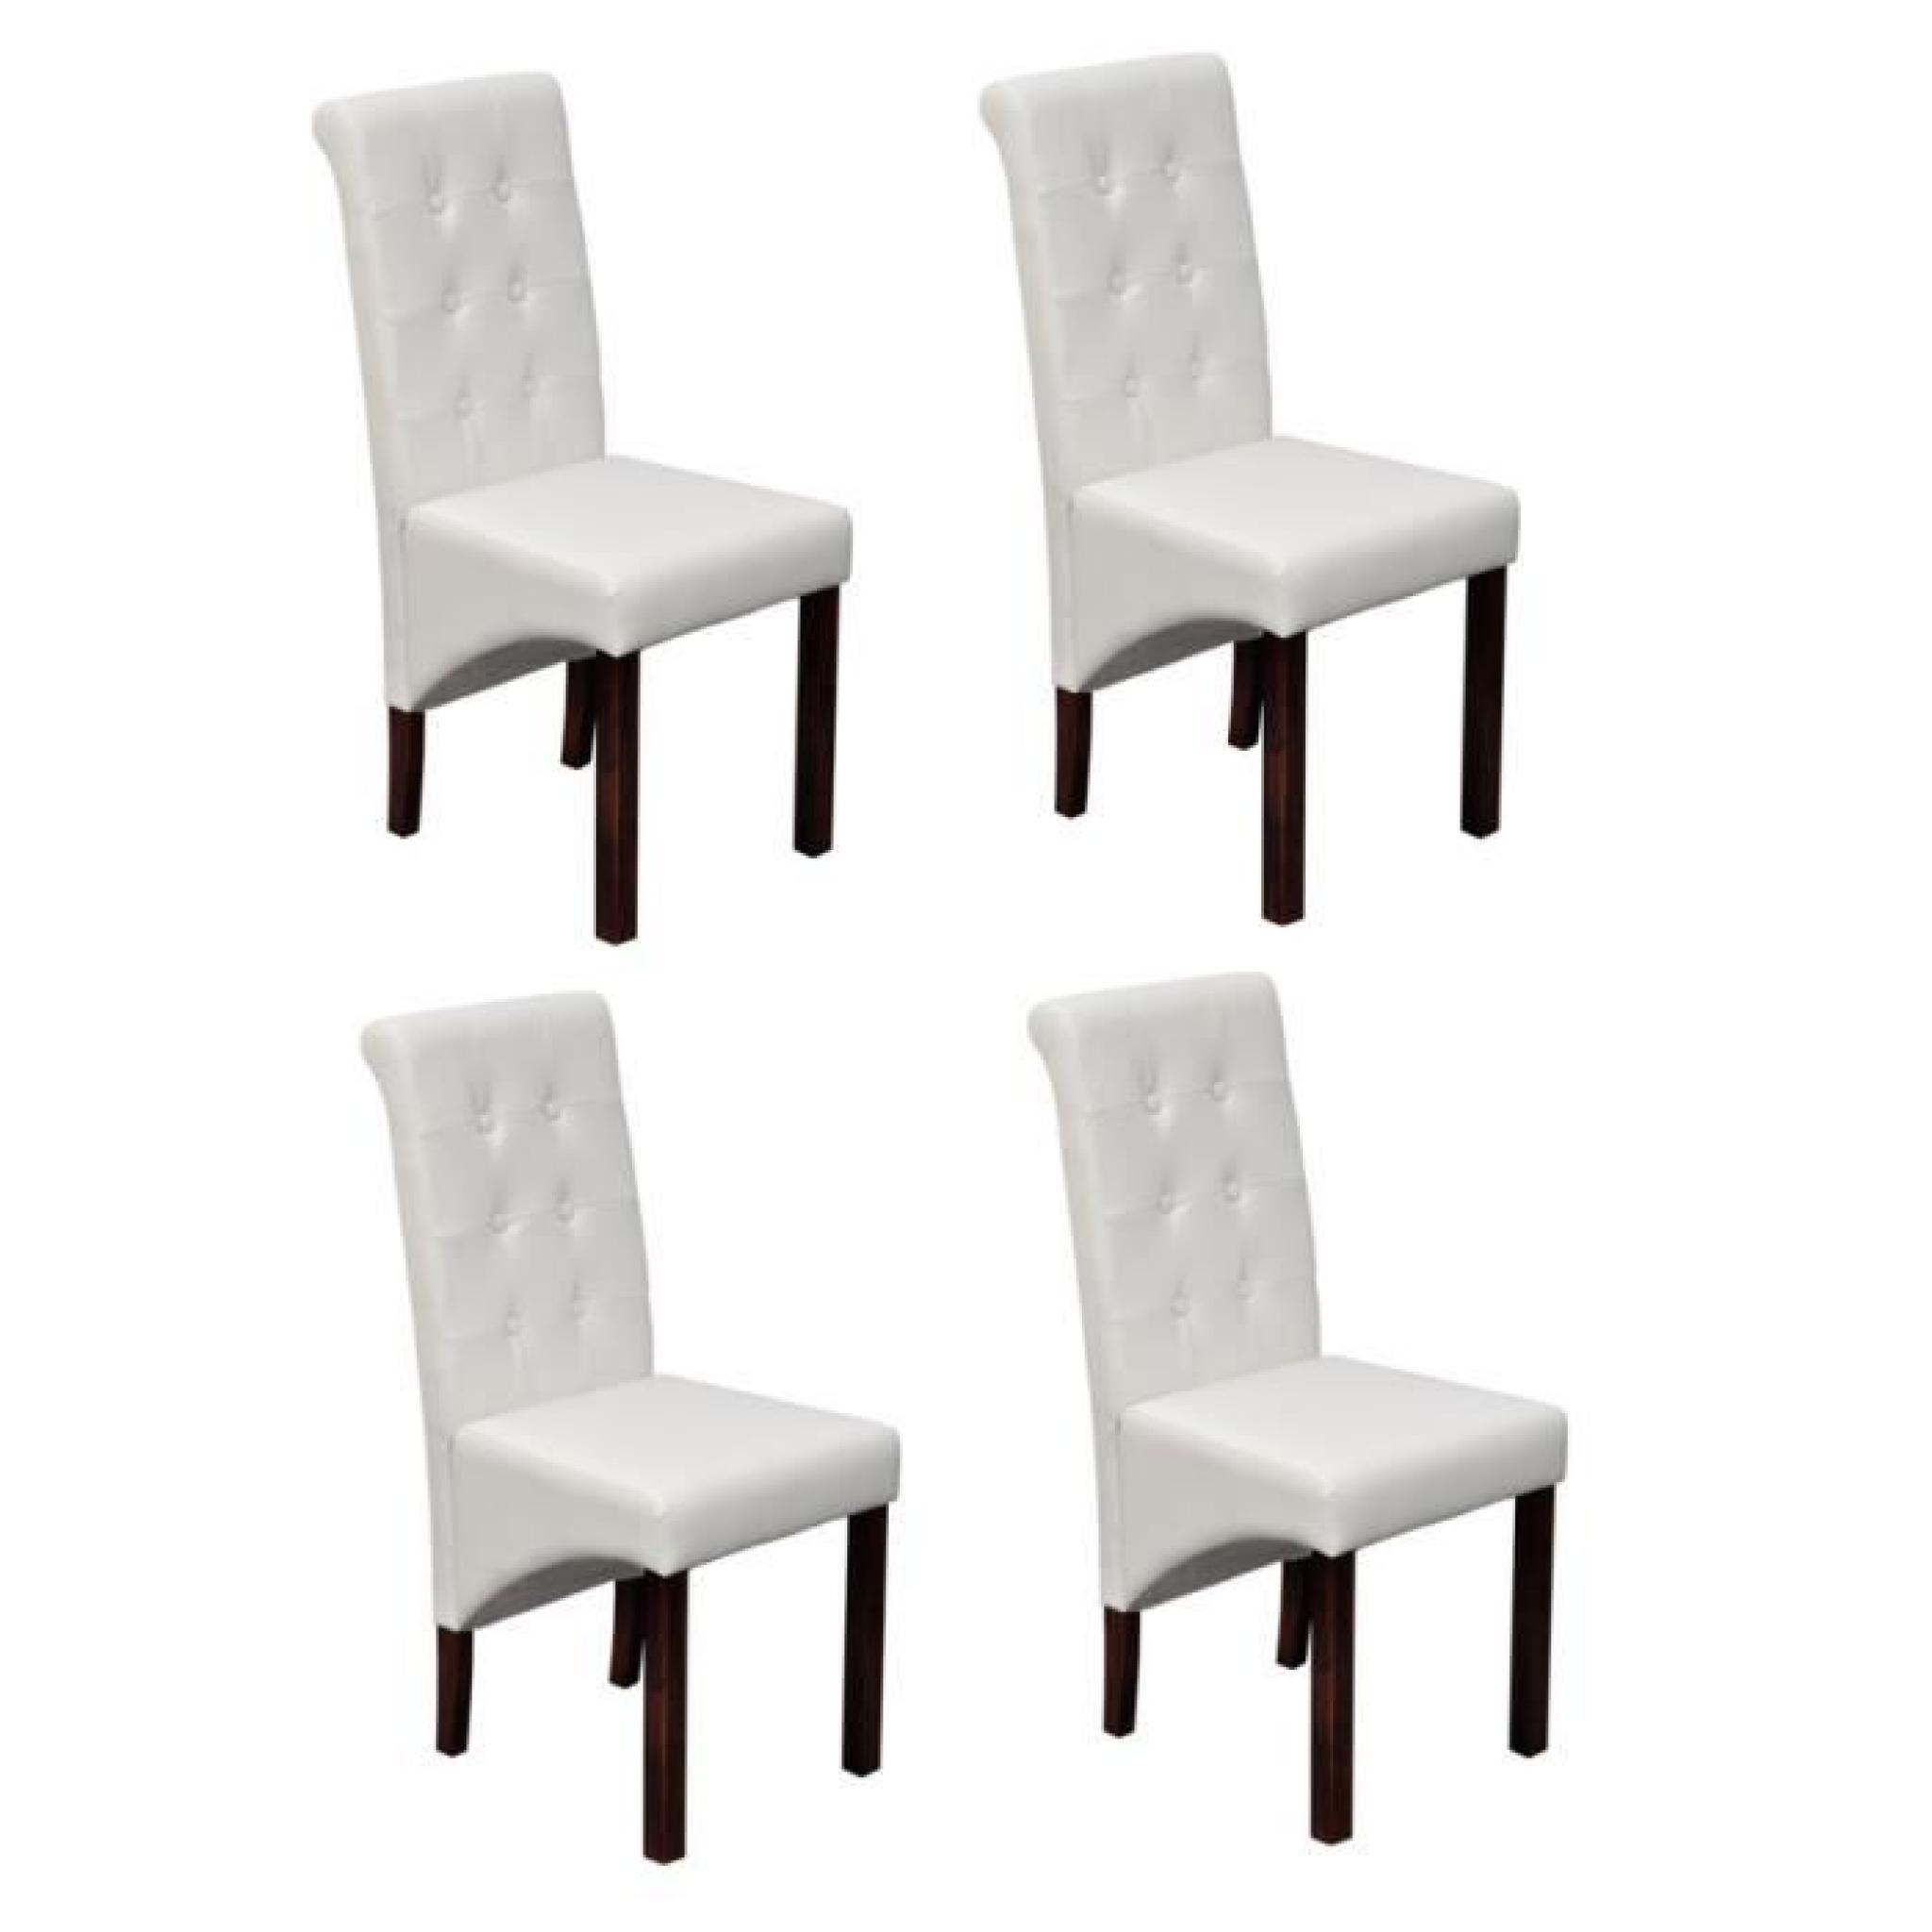 4 Chaises antique simili cuir blanc pas cher